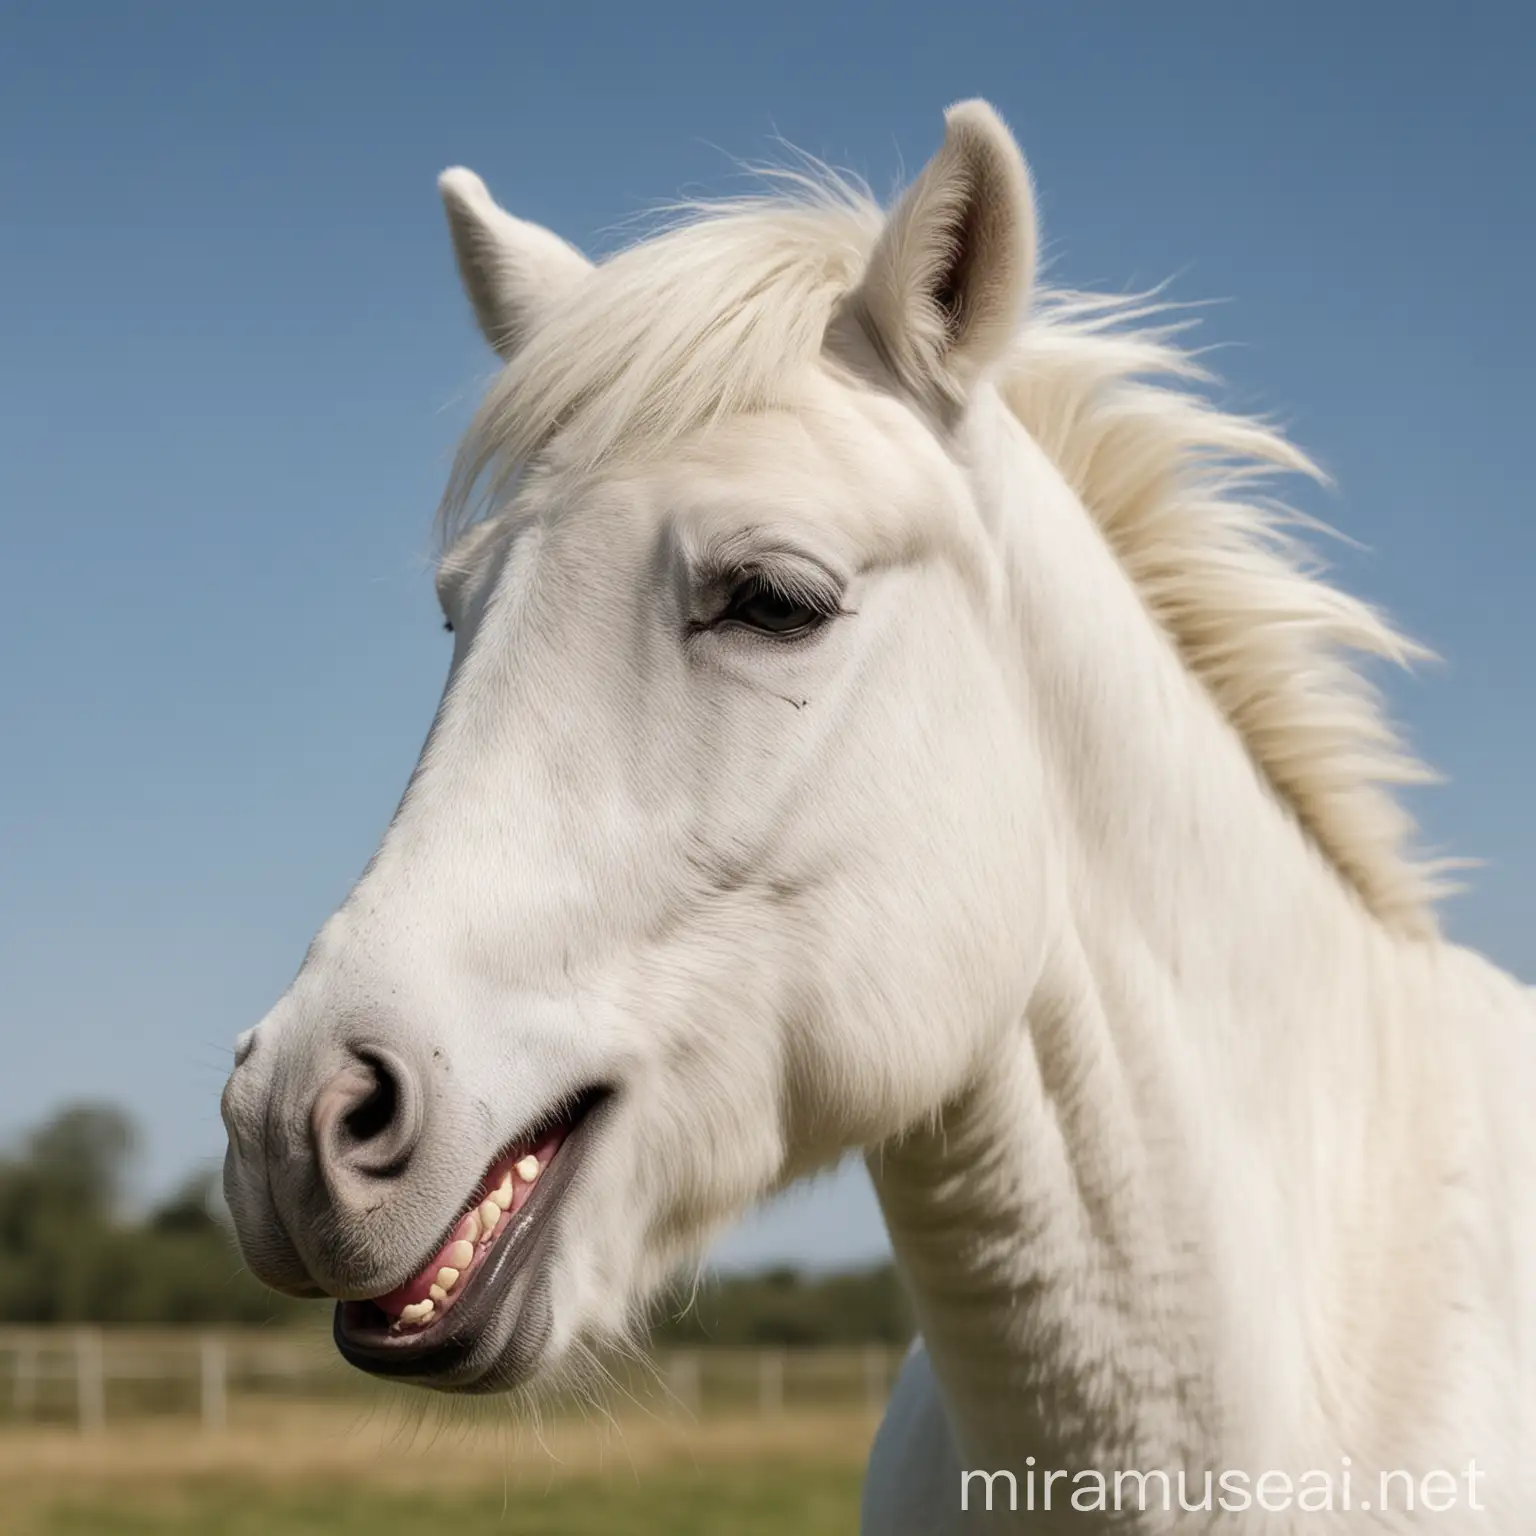 Smiling White Pony with Joyful Expression